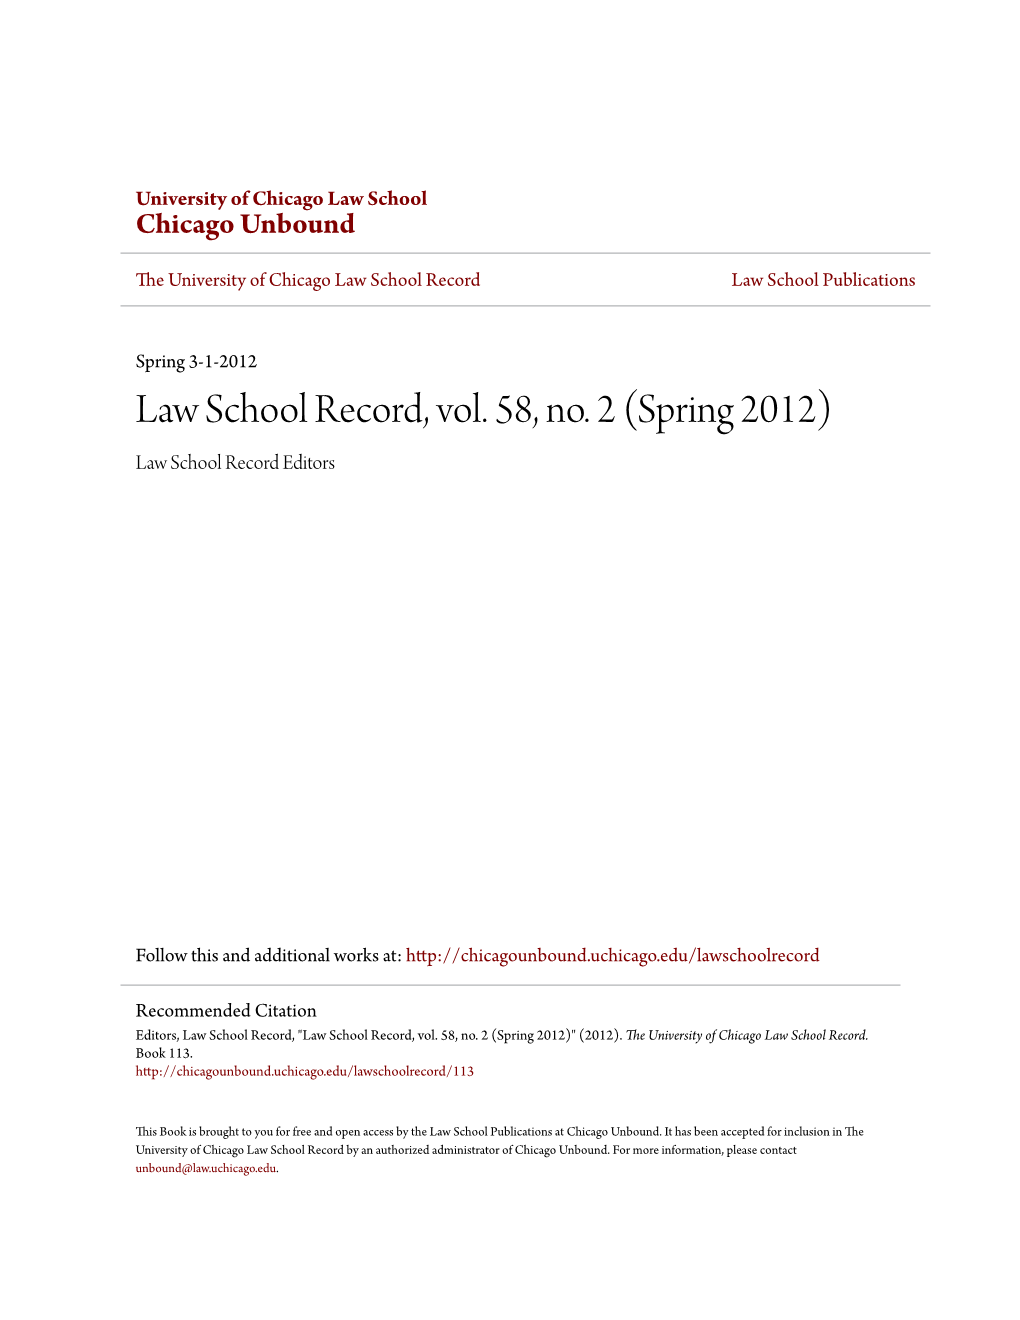 Law School Record, Vol. 58, No. 2 (Spring 2012) Law School Record Editors